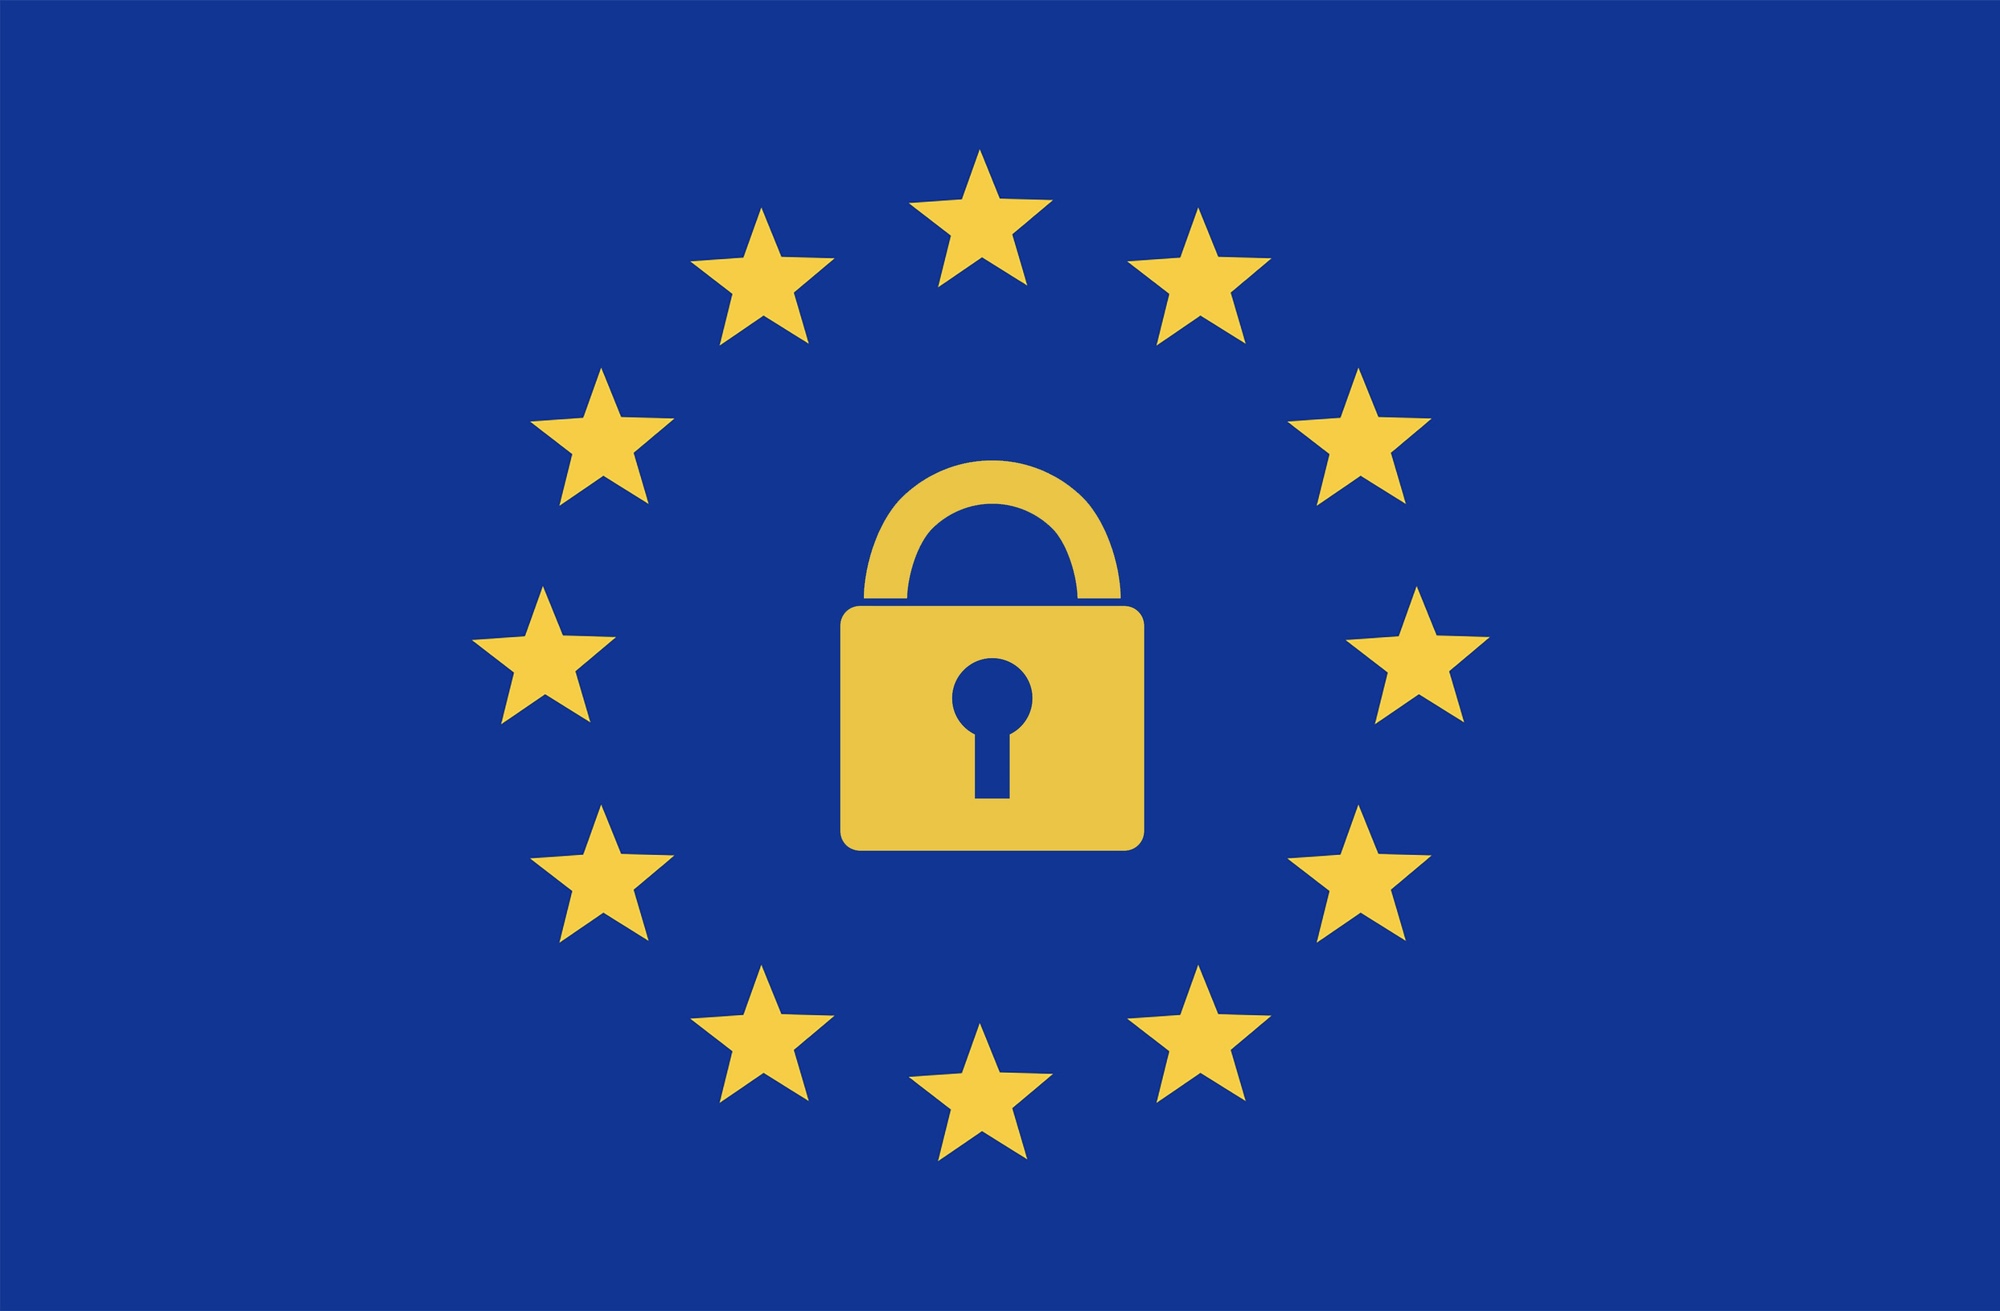 Bild: Europäische Flagge mit einem Vorhängeschloss in der Mitte zwischen den Sternen